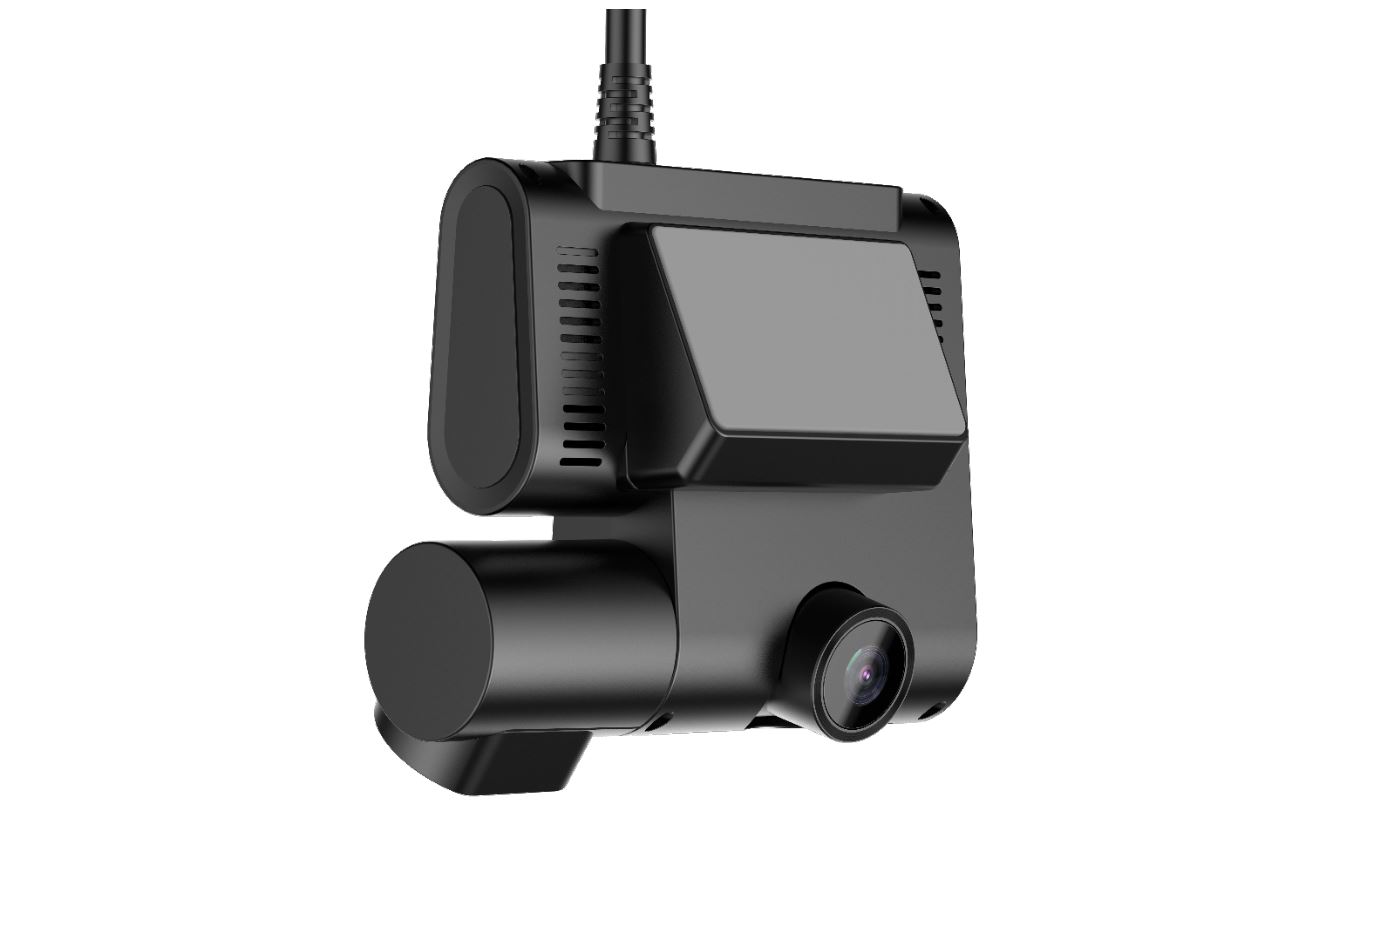 คู่มือการใช้งาน กล้องติดรถยนต์ AZDOME C9 กล้องติดรถ 4G ดูออนไลน์ได้ทุกที่ทั่วโลก มีระบบ GPS Tracking ติดตามรถแบบ real time